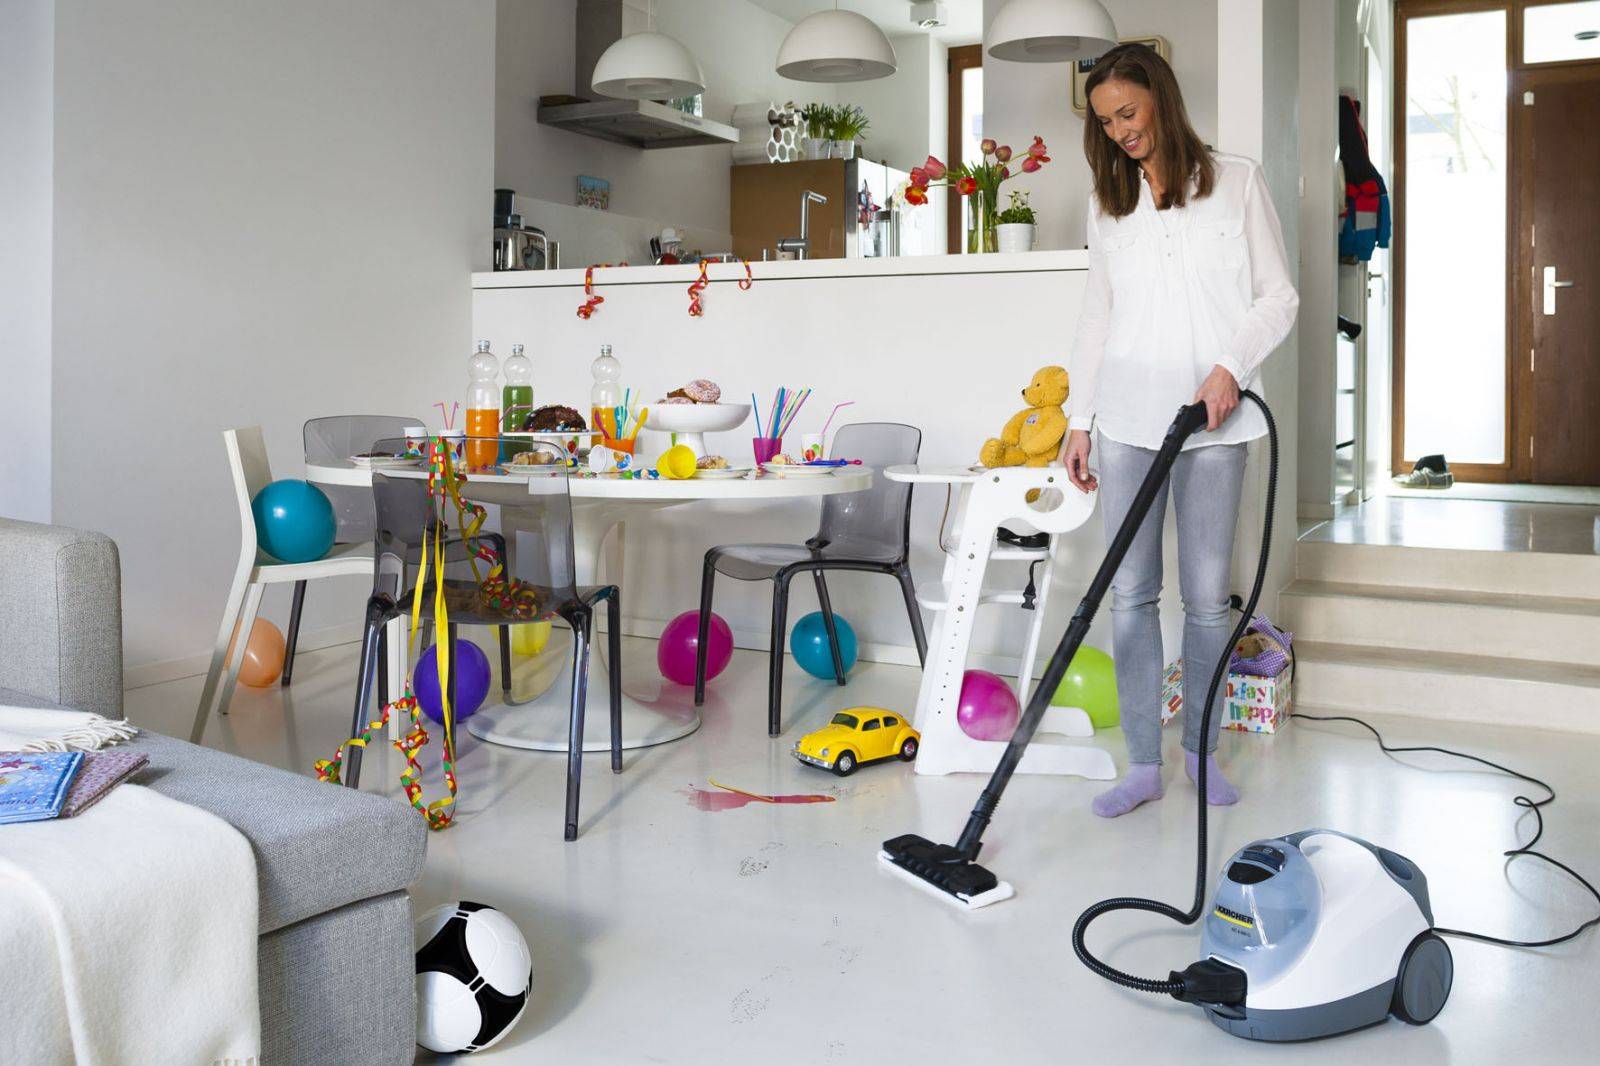 Как навести порядок в квартире: методы и способы уборки, поддержание чистоты в доме